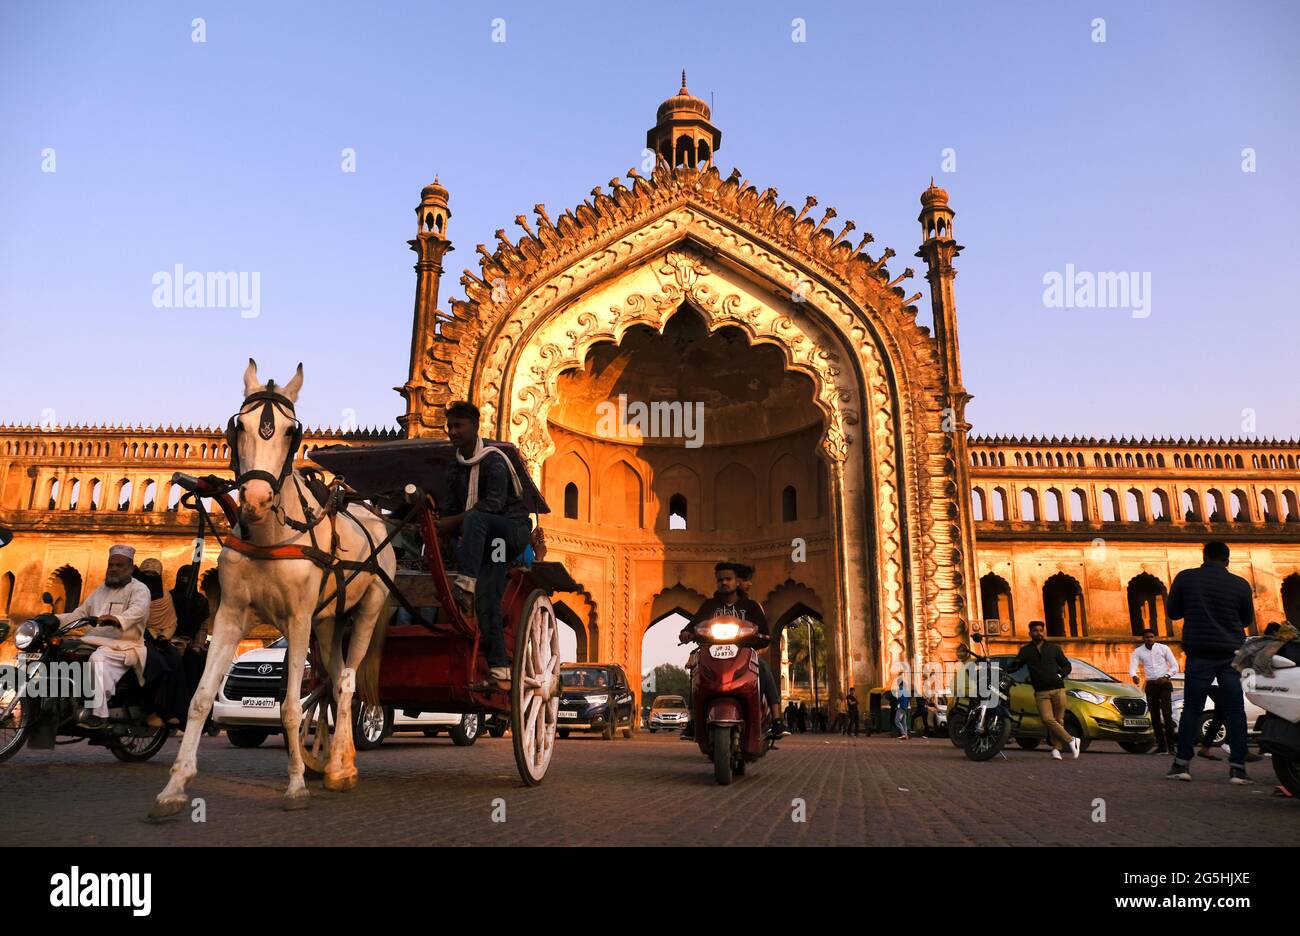 Lucknow, 07, février 2021 : Rumi Darwaza, porte d'architecture islamique construite par Nawab Asaf-UD-doula en 1784 à Lucknow, Uttar Pradesh, Inde. Banque D'Images